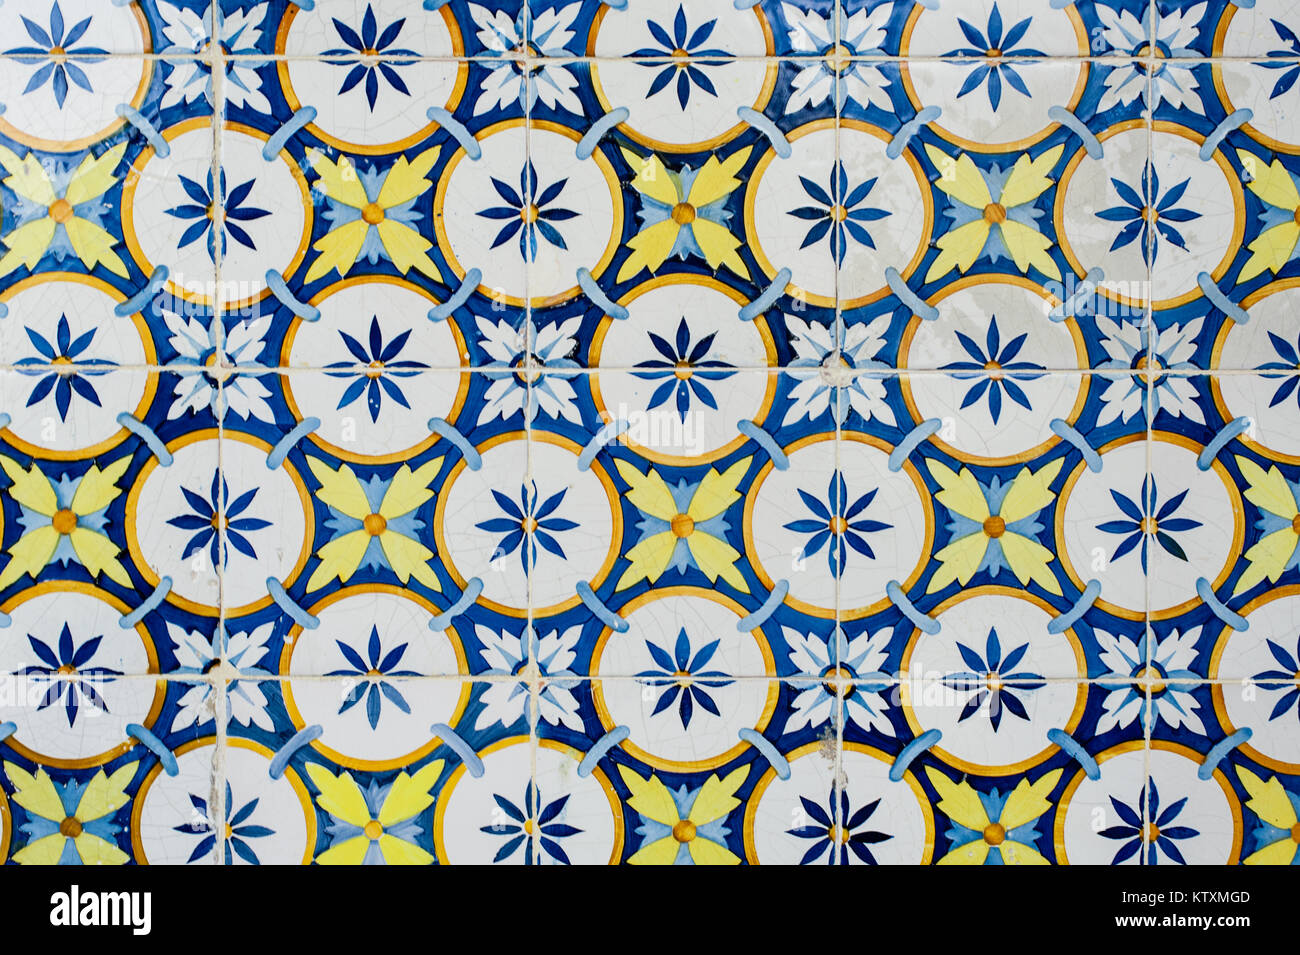 Les carreaux de céramique azulejo portugais avec une circulaire, motif floral, décorer les murs extérieurs d'un bâtiment à Lisbonne, Portugal. Banque D'Images